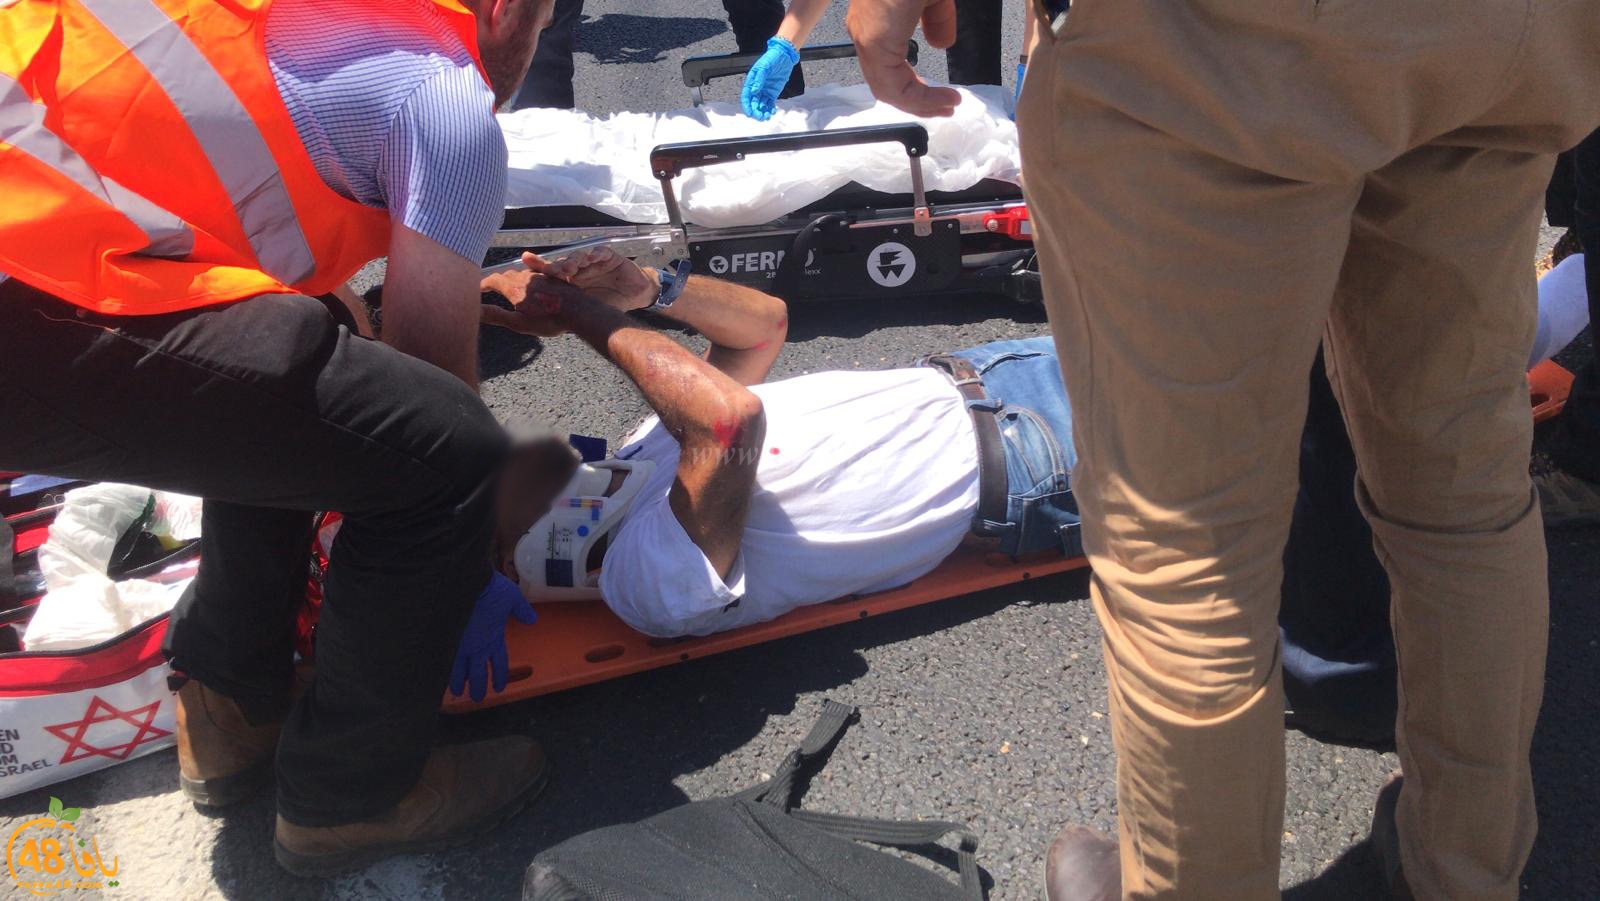   صور: إصابة متوسطة لراكب دراجة نارية بحادث طرق ذاتي في يافا